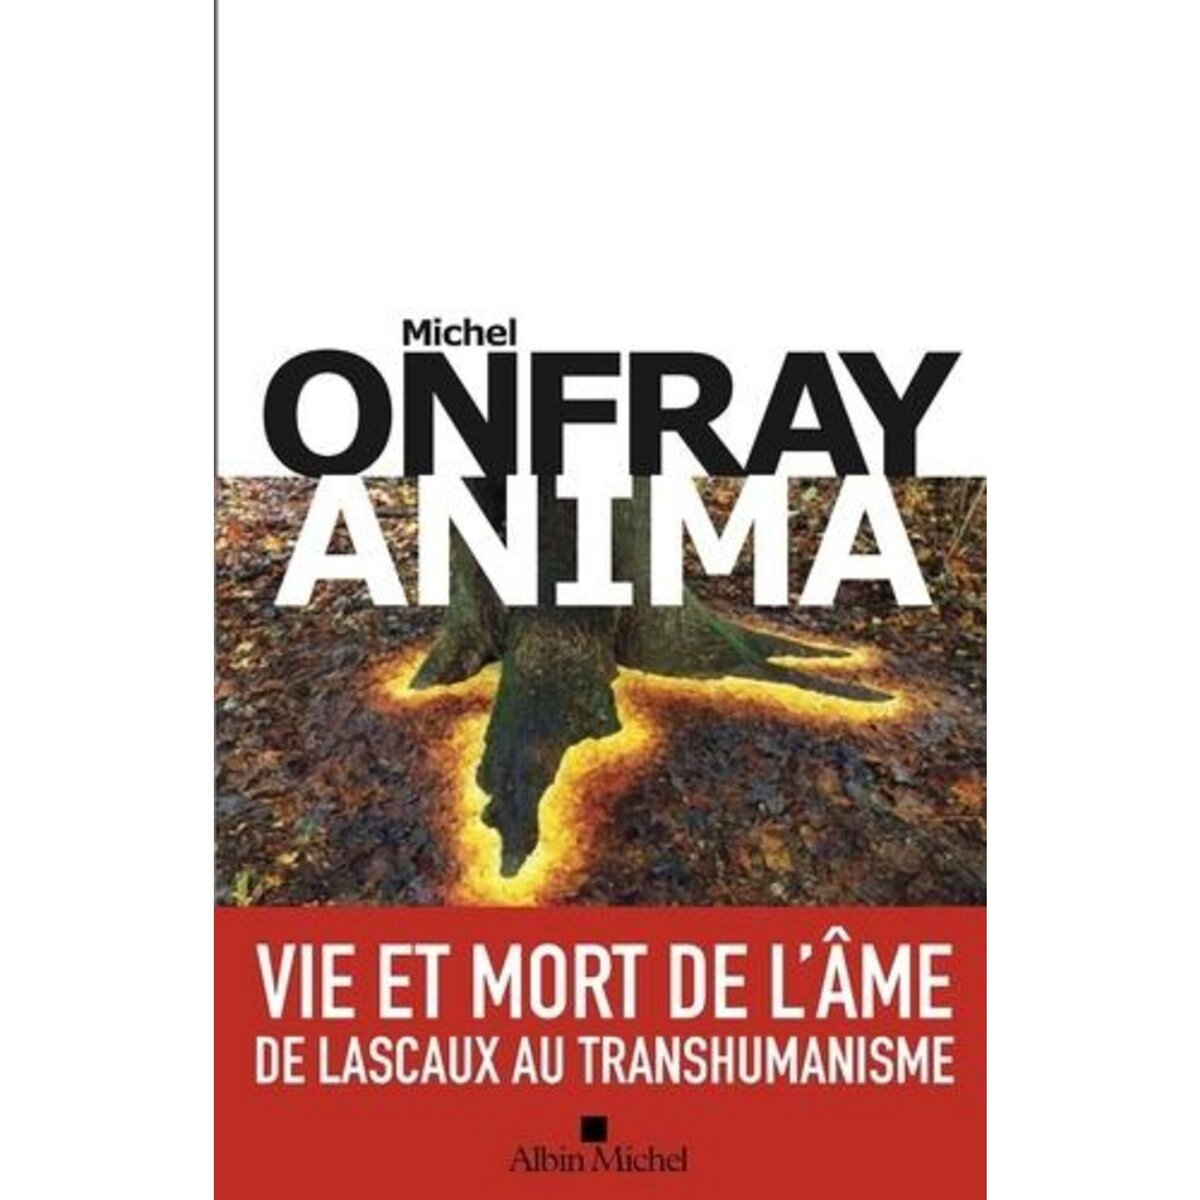  ANIMA. VIE ET MORT DE L'AME, Onfray Michel